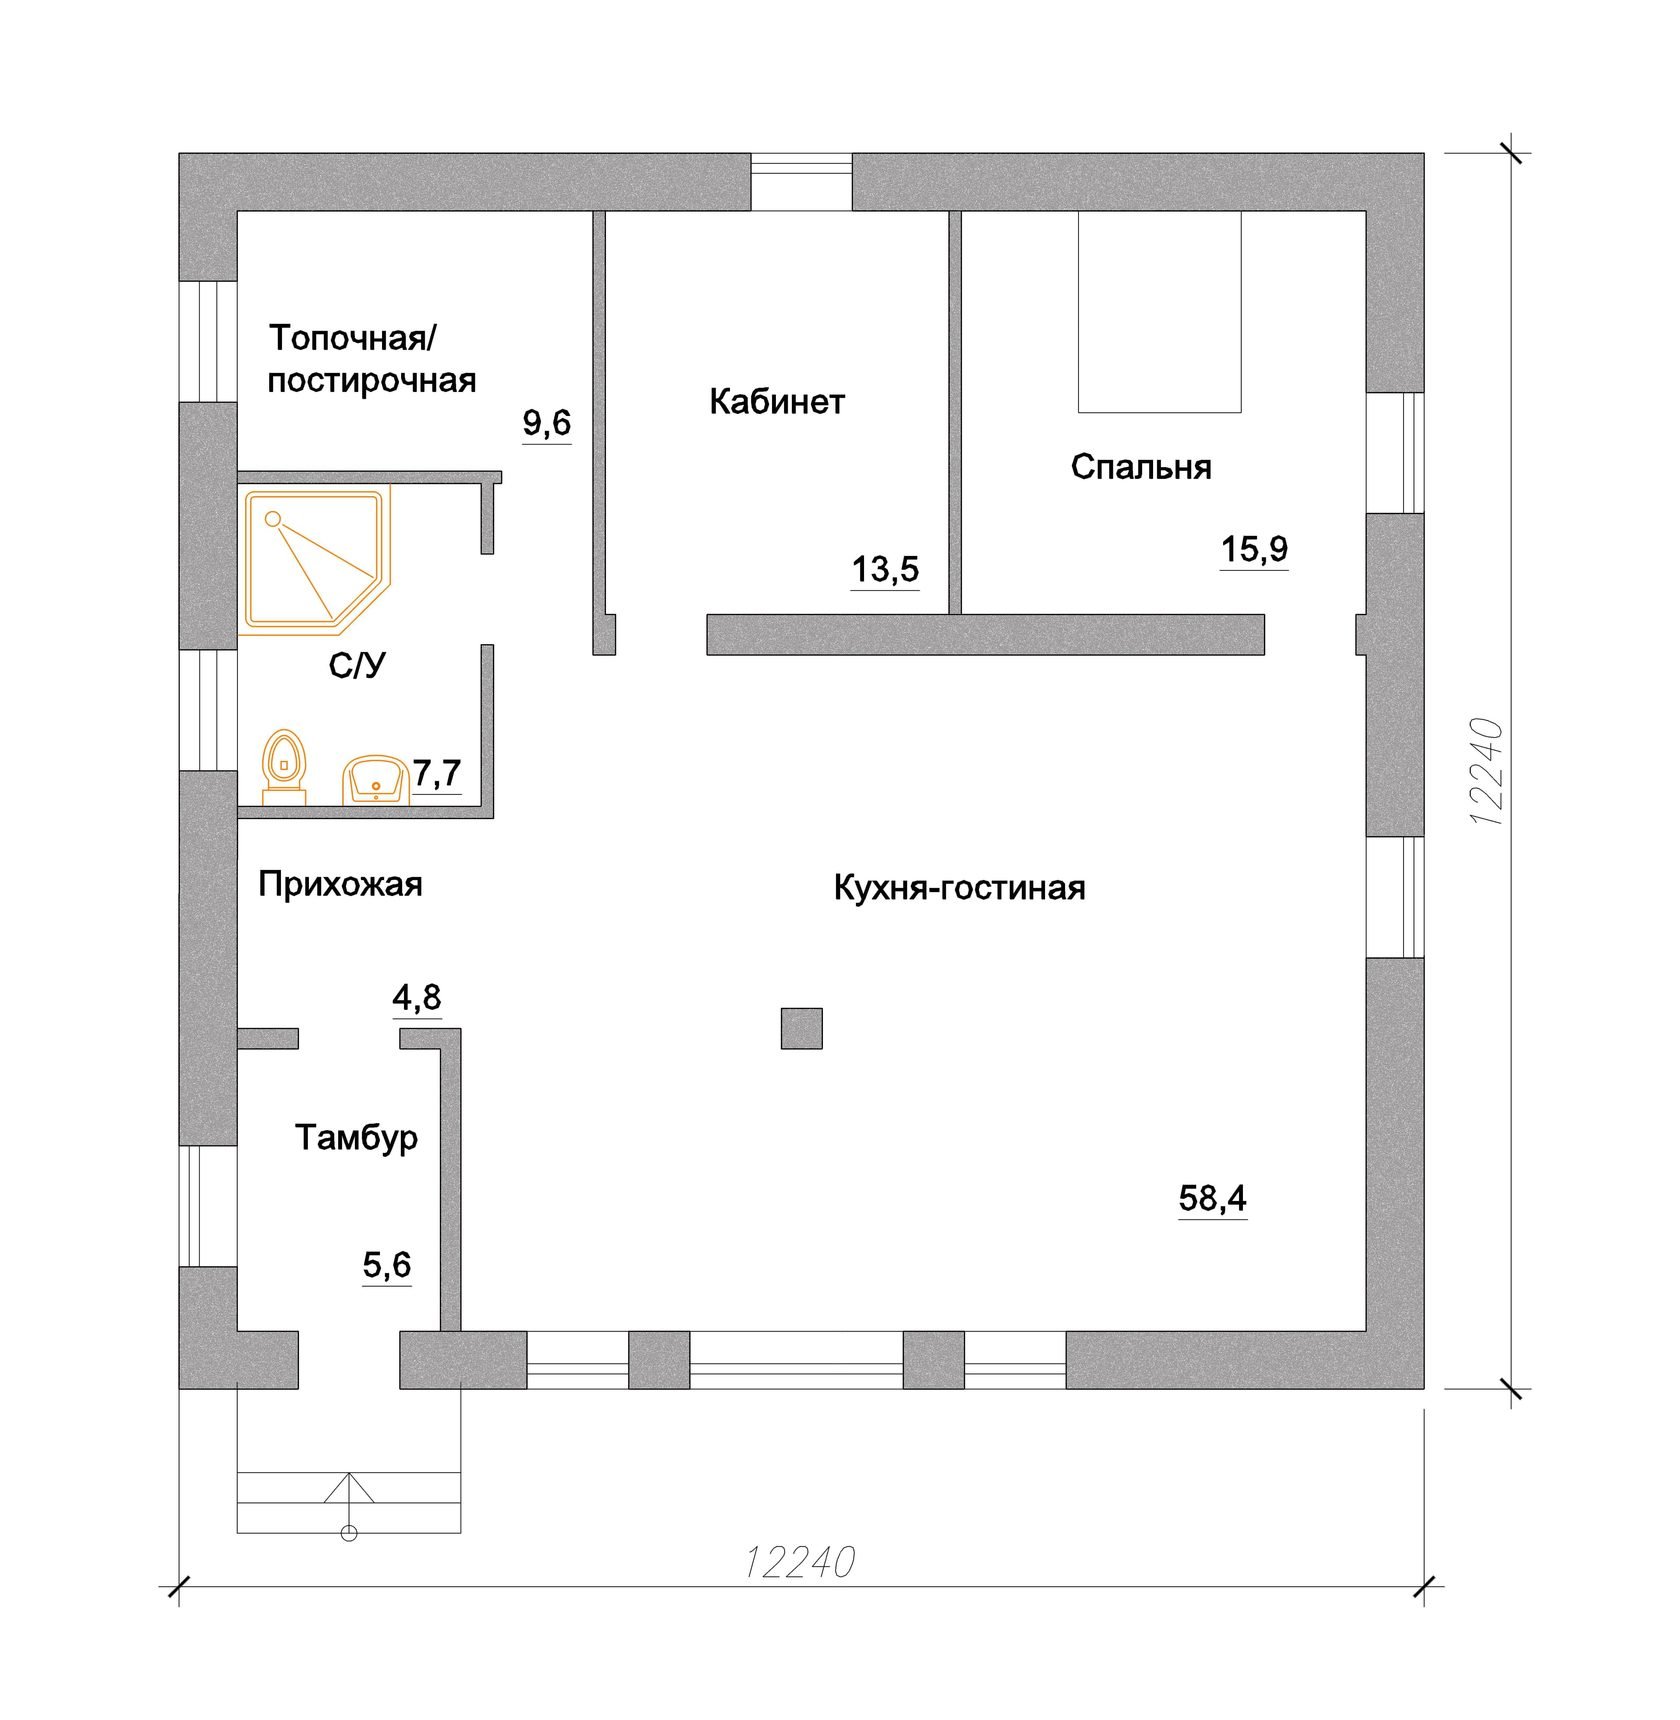 Одноэтажный дом 70м2 планировка с 3 спальнями